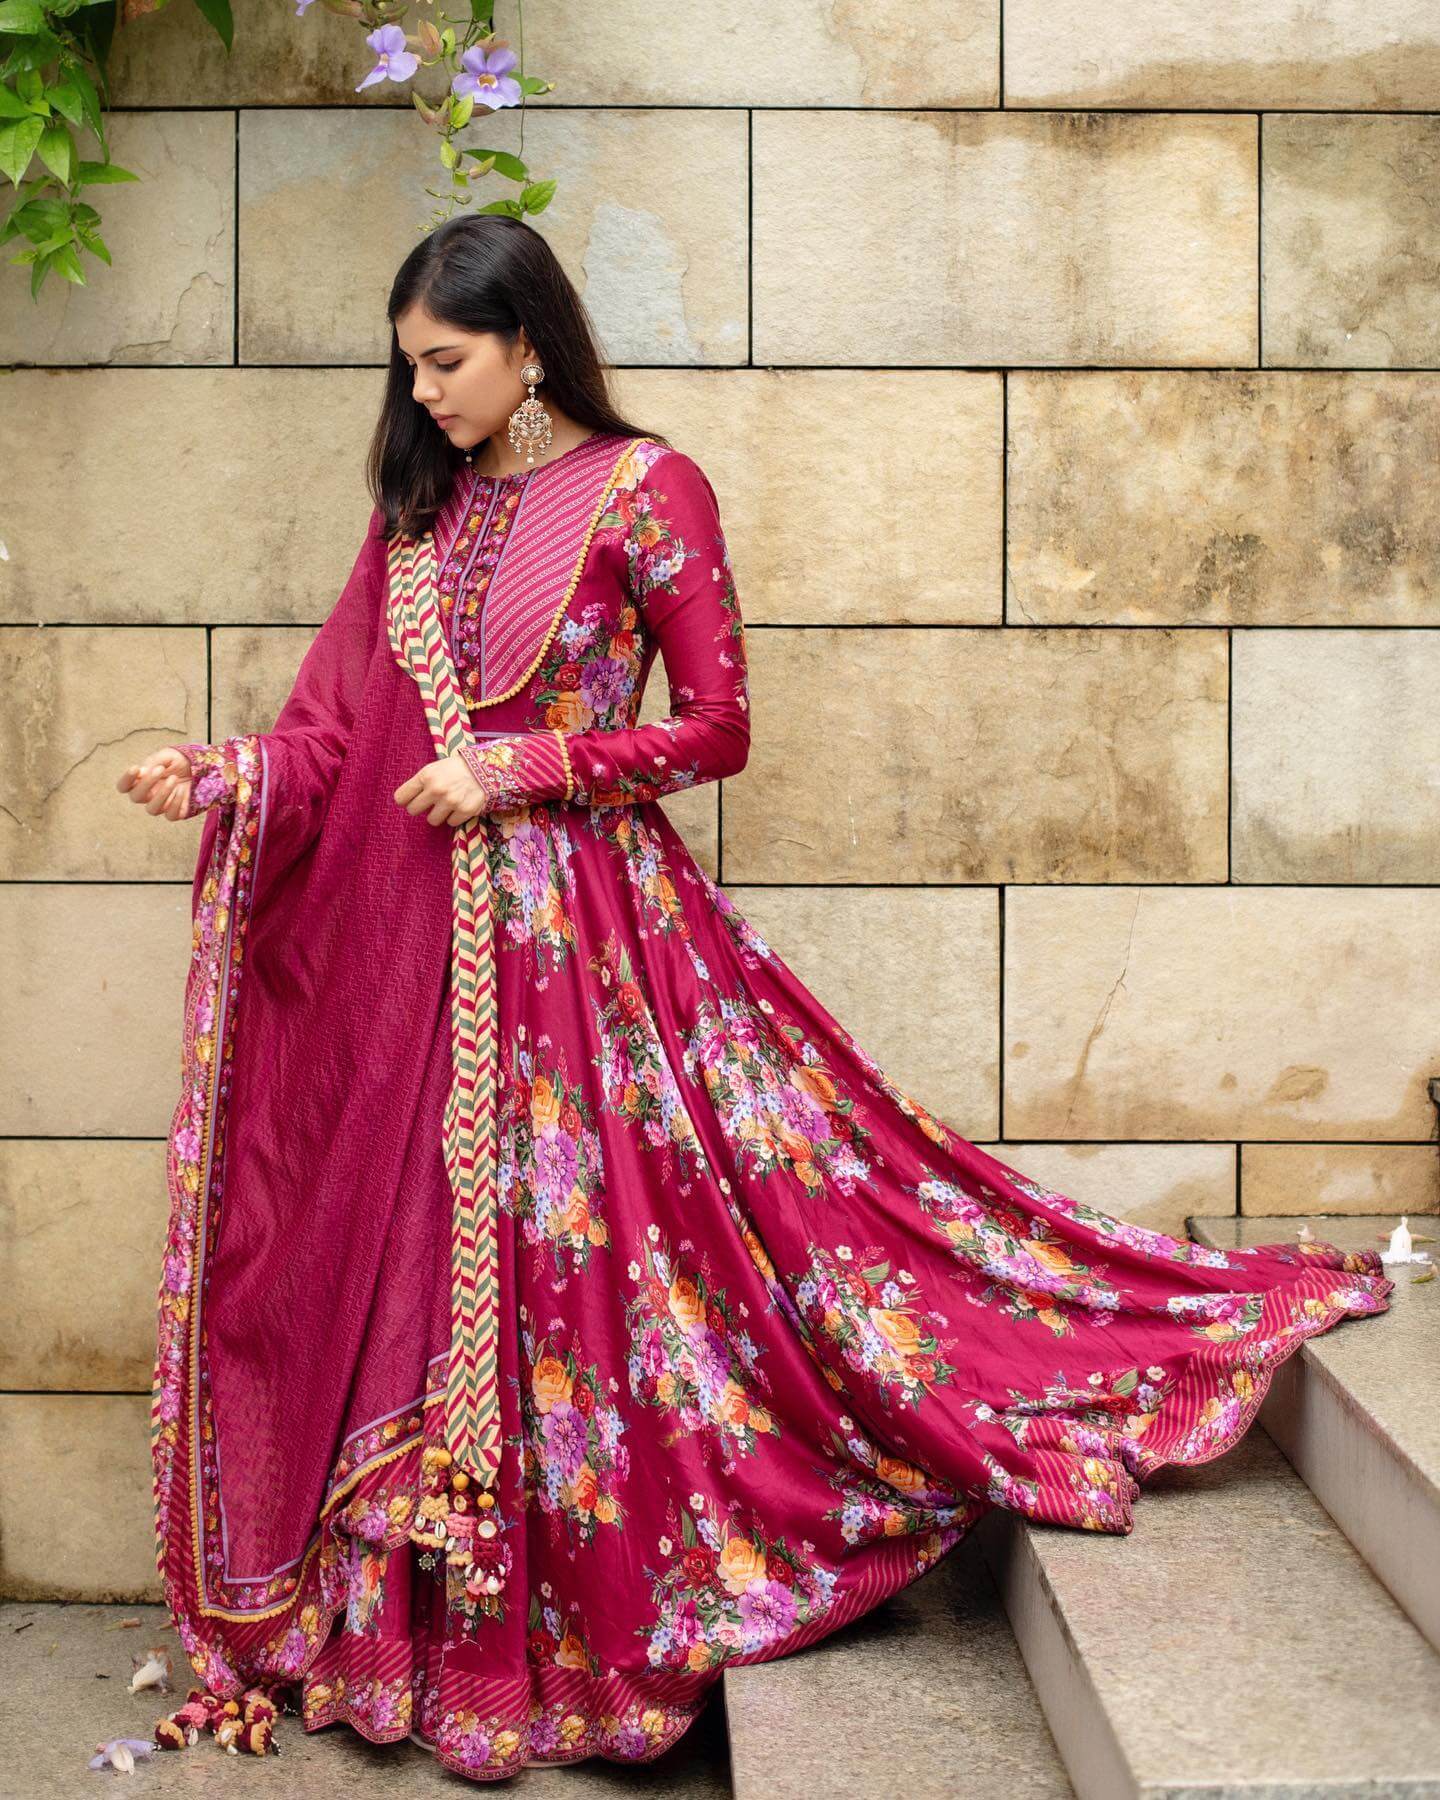 Kalyani Priyadarshan In Wine Floral Print Full Sleeves Suit Set Outfits looks